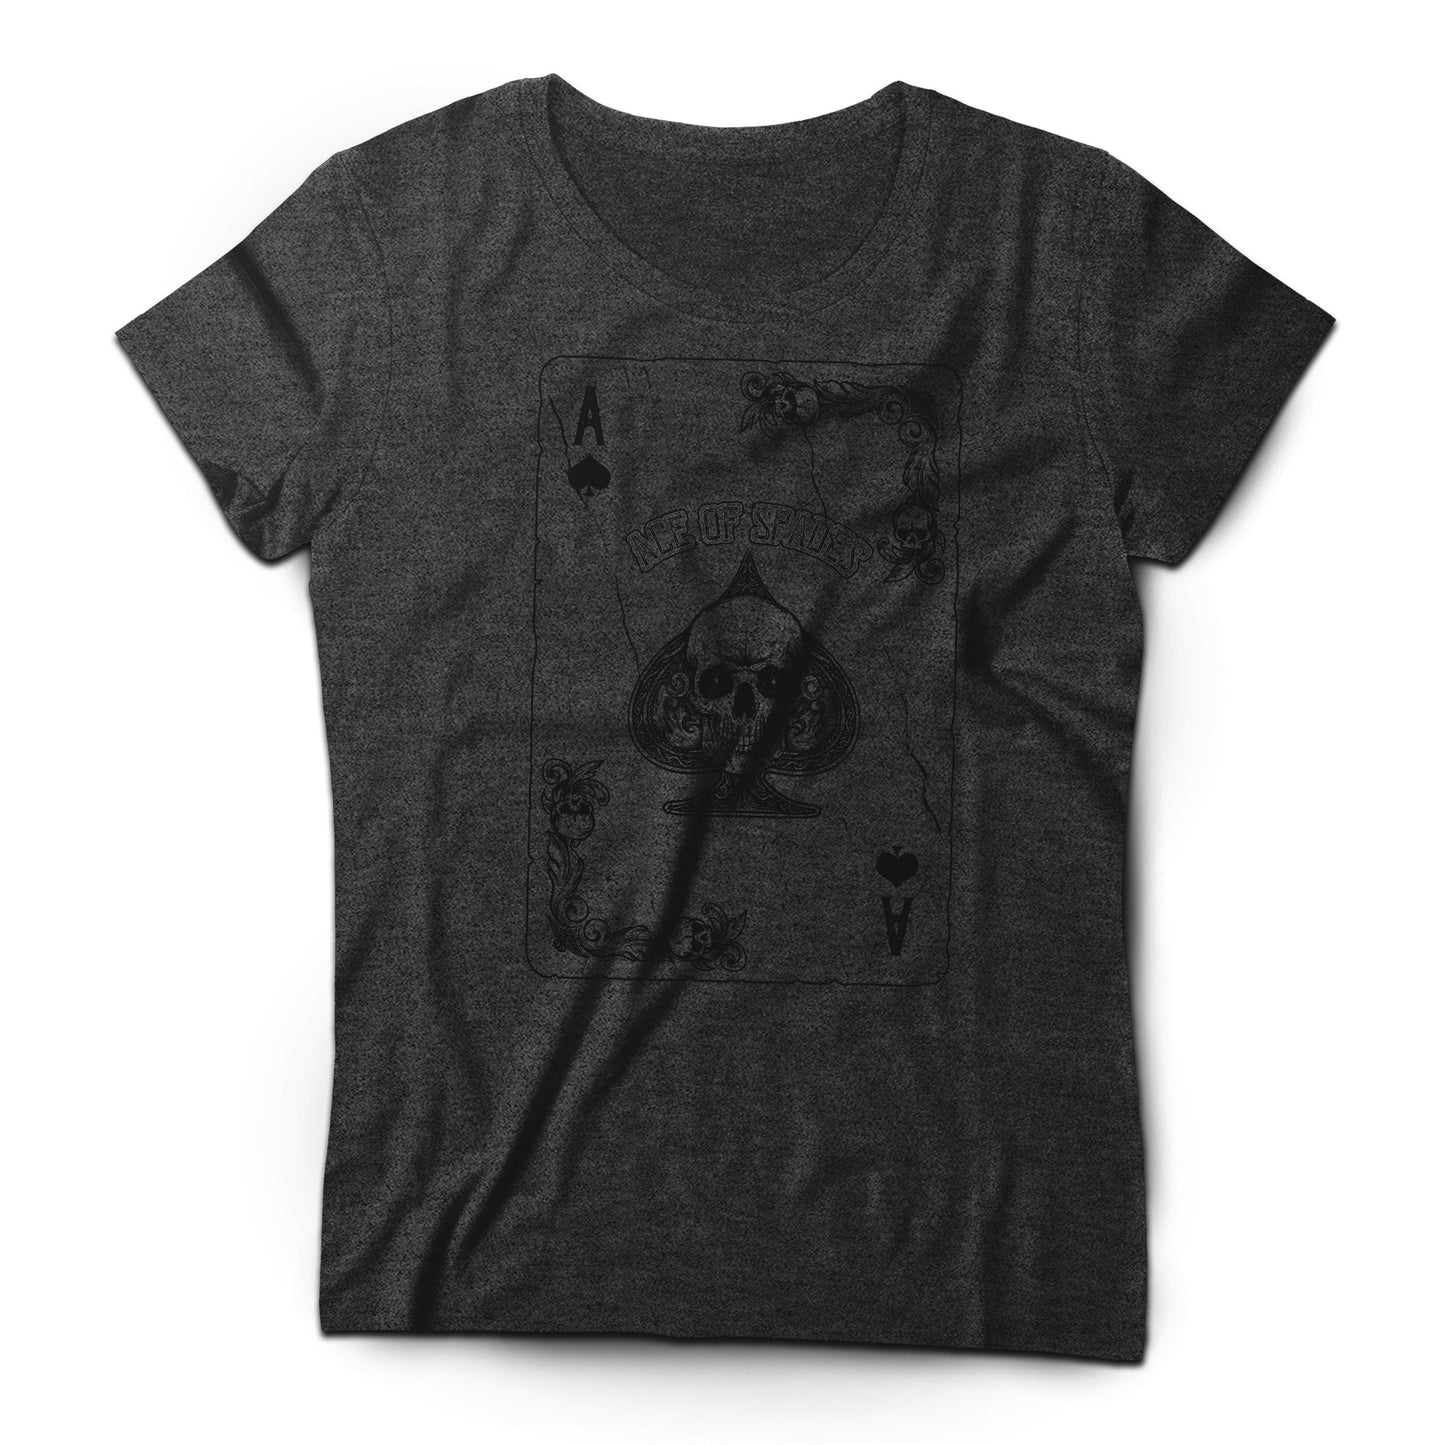 Motörhead - Ace of Spades - Women's T-shirt Dark Gray 2